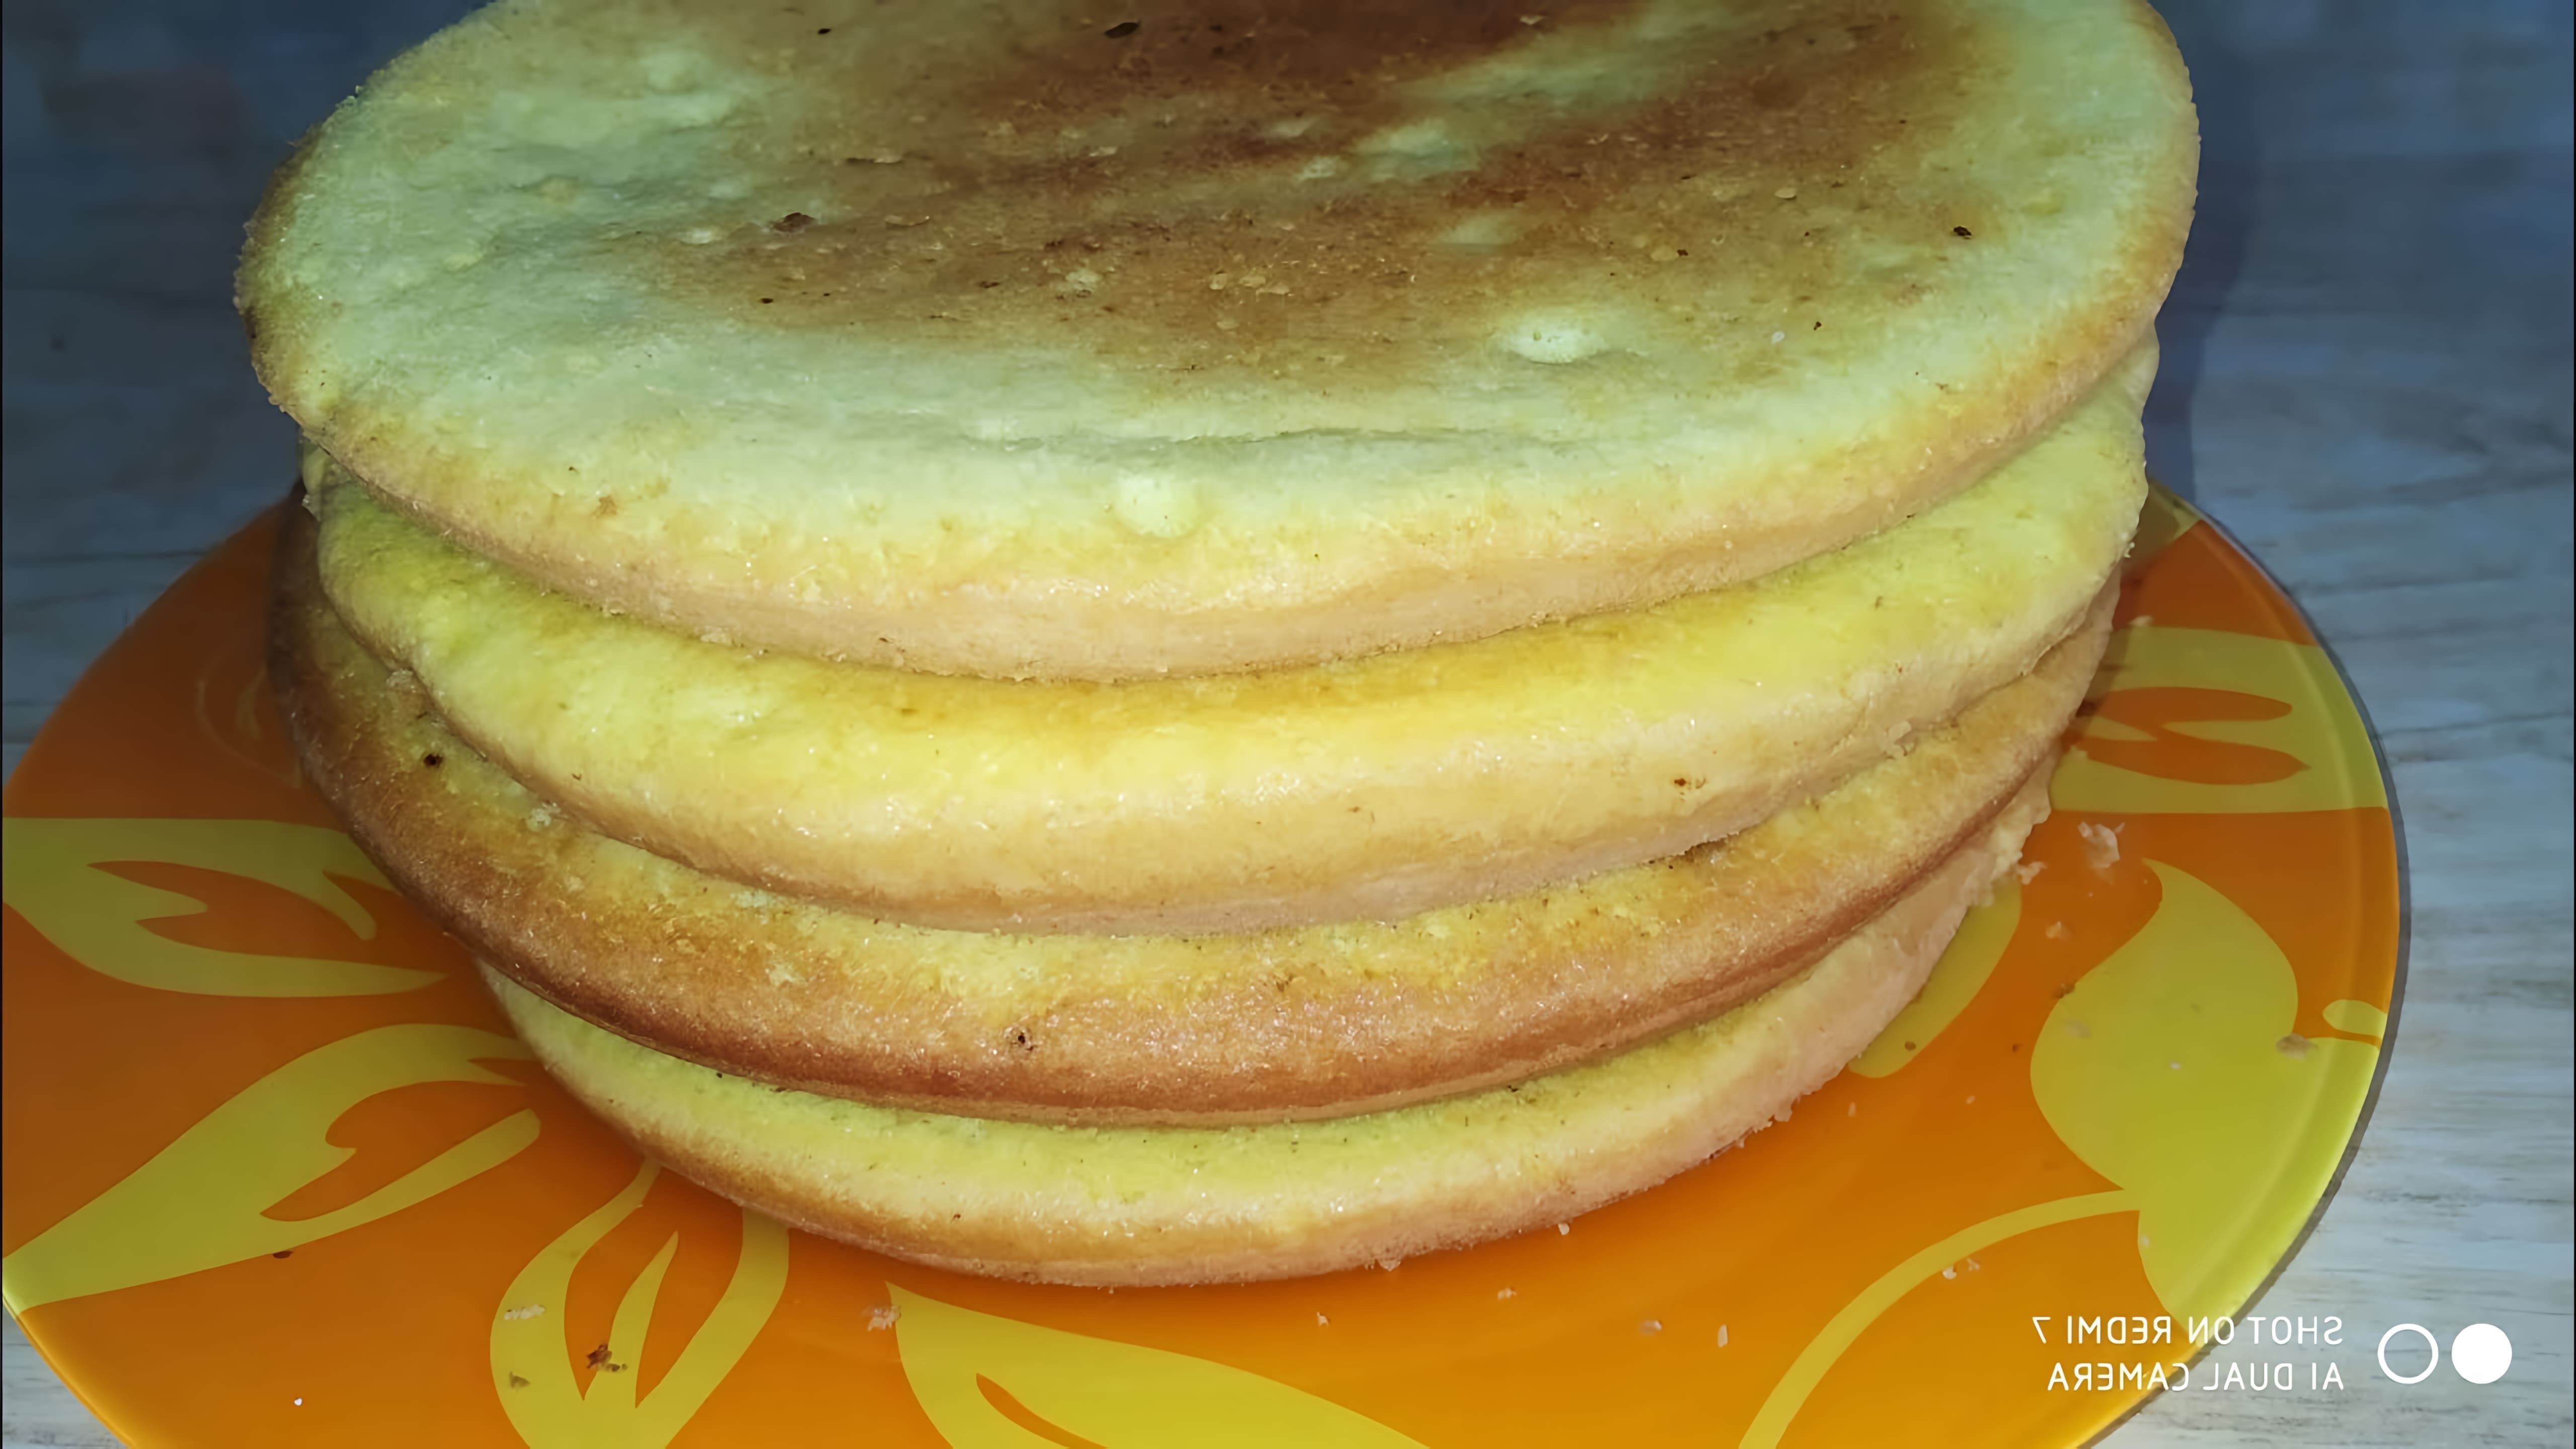 В этом видео демонстрируется процесс приготовления бисквита на сковороде без использования духовки